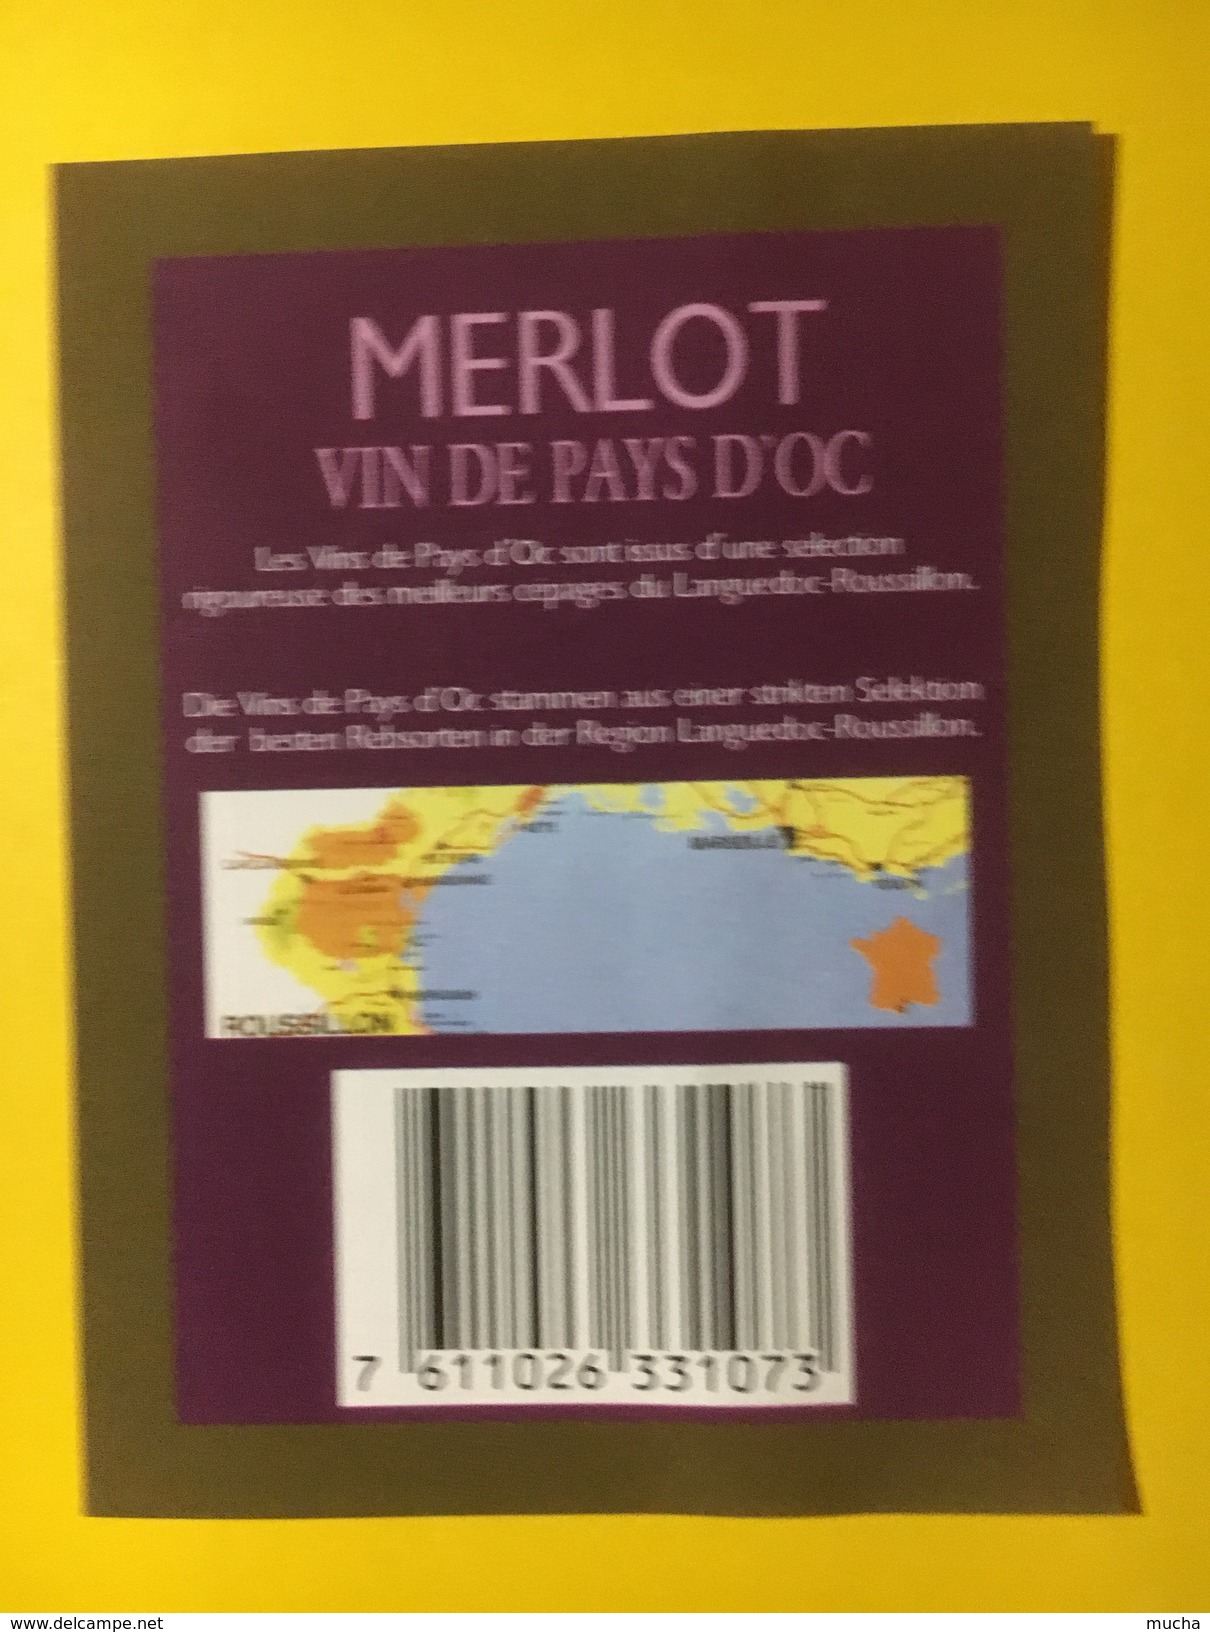 4312 - Les Vignerons De La Méditerranée Narbonne Merlot 1994 Vin De Pays D'Oc - Languedoc-Roussillon